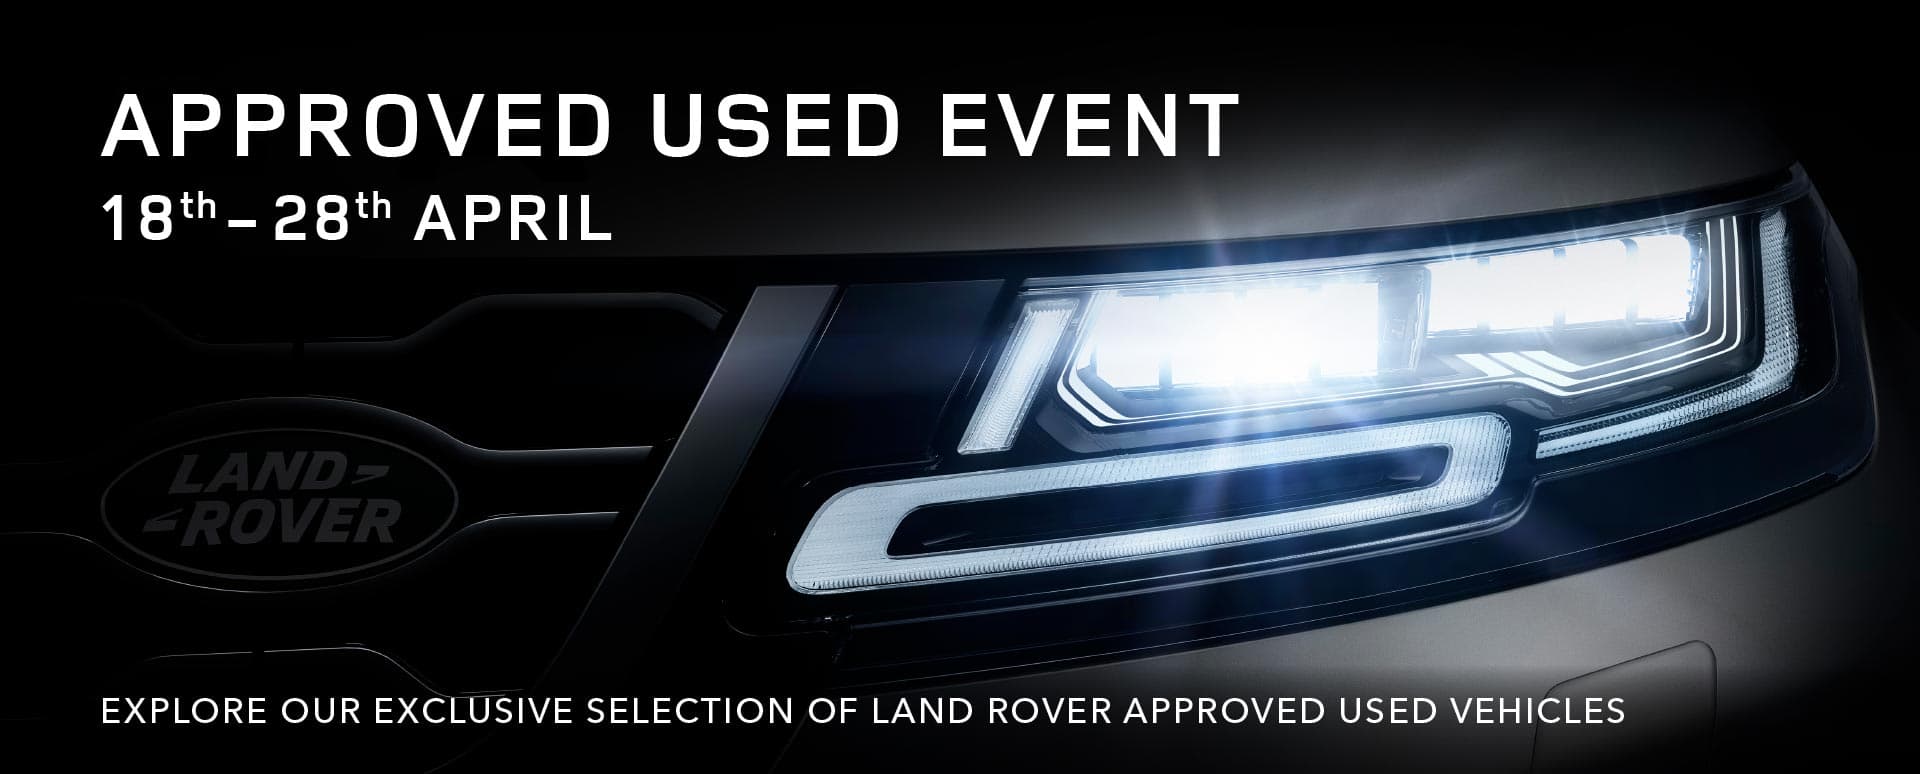 A Land Rover's car headlight lit up